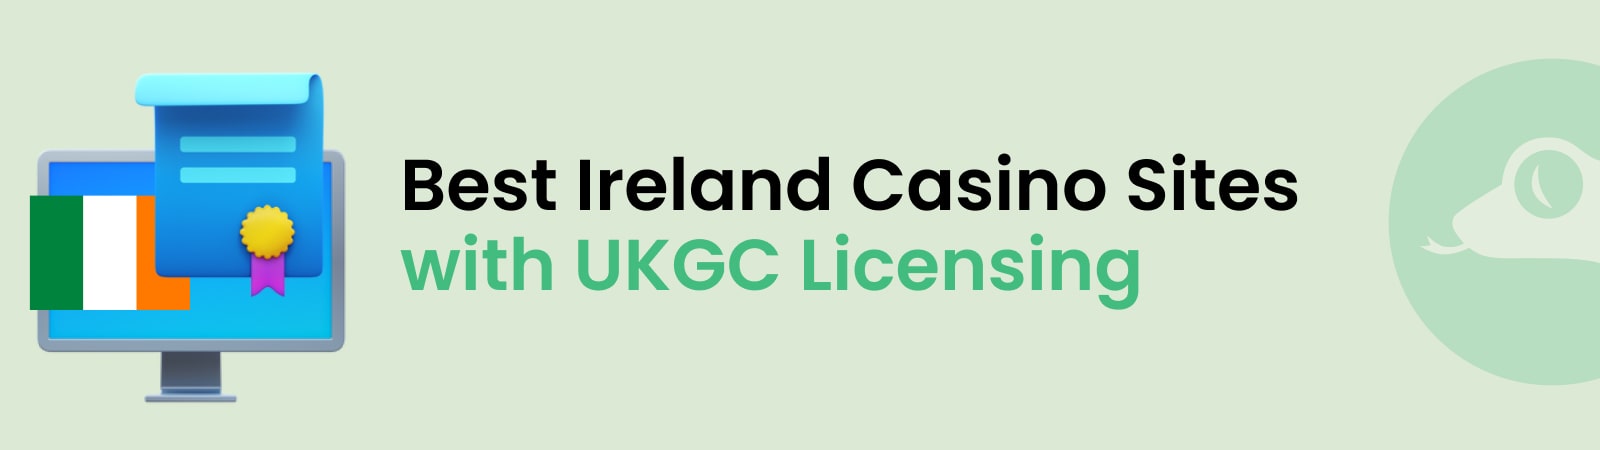 best ireland casino sites with ukgc licensing